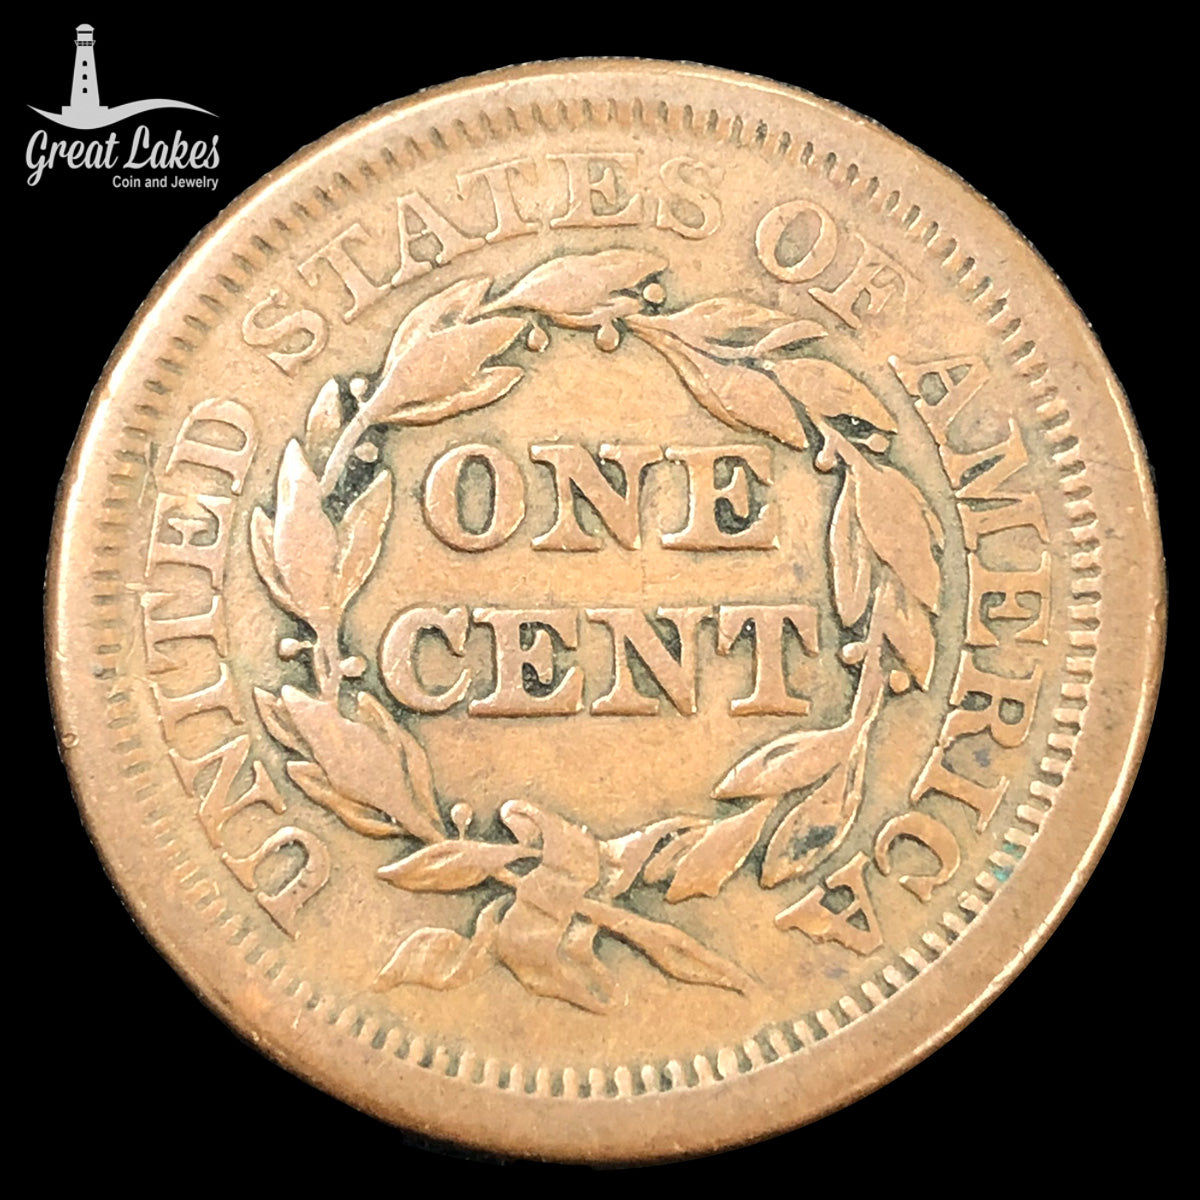 1850 Braided Hair Large Cent (VF)